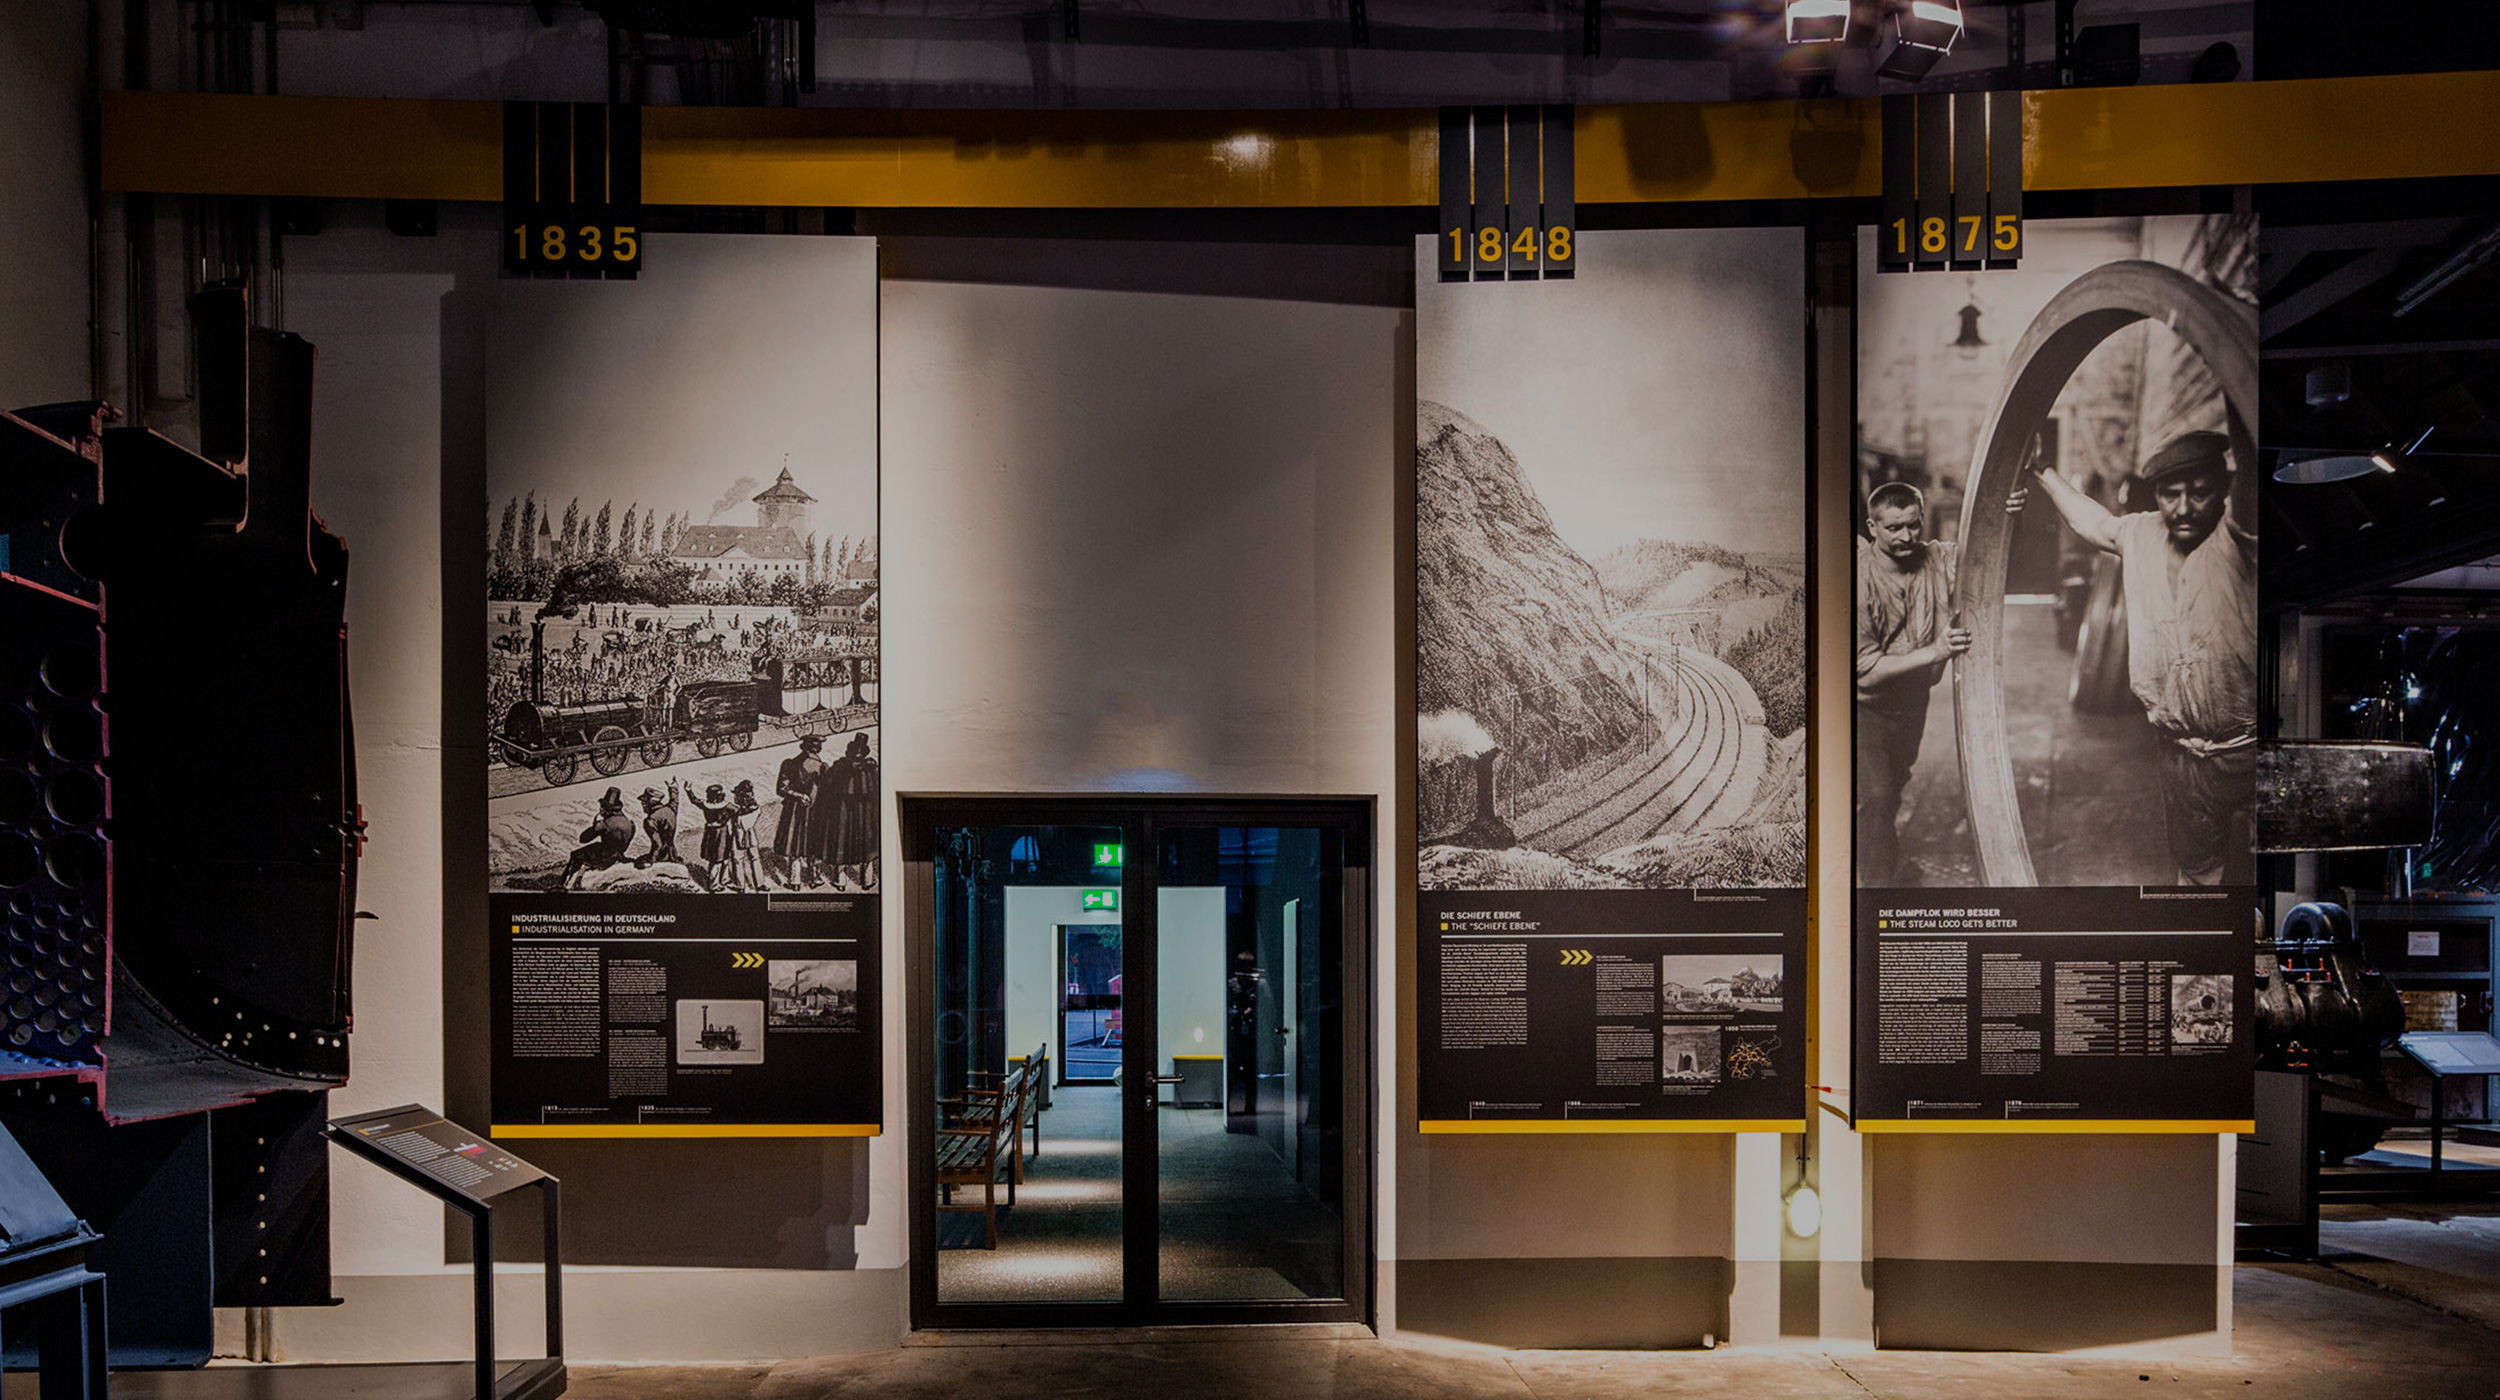 Drei große Informationstafeln über verschiedene Epochen der Eisenbahnzeit hängen im Museum